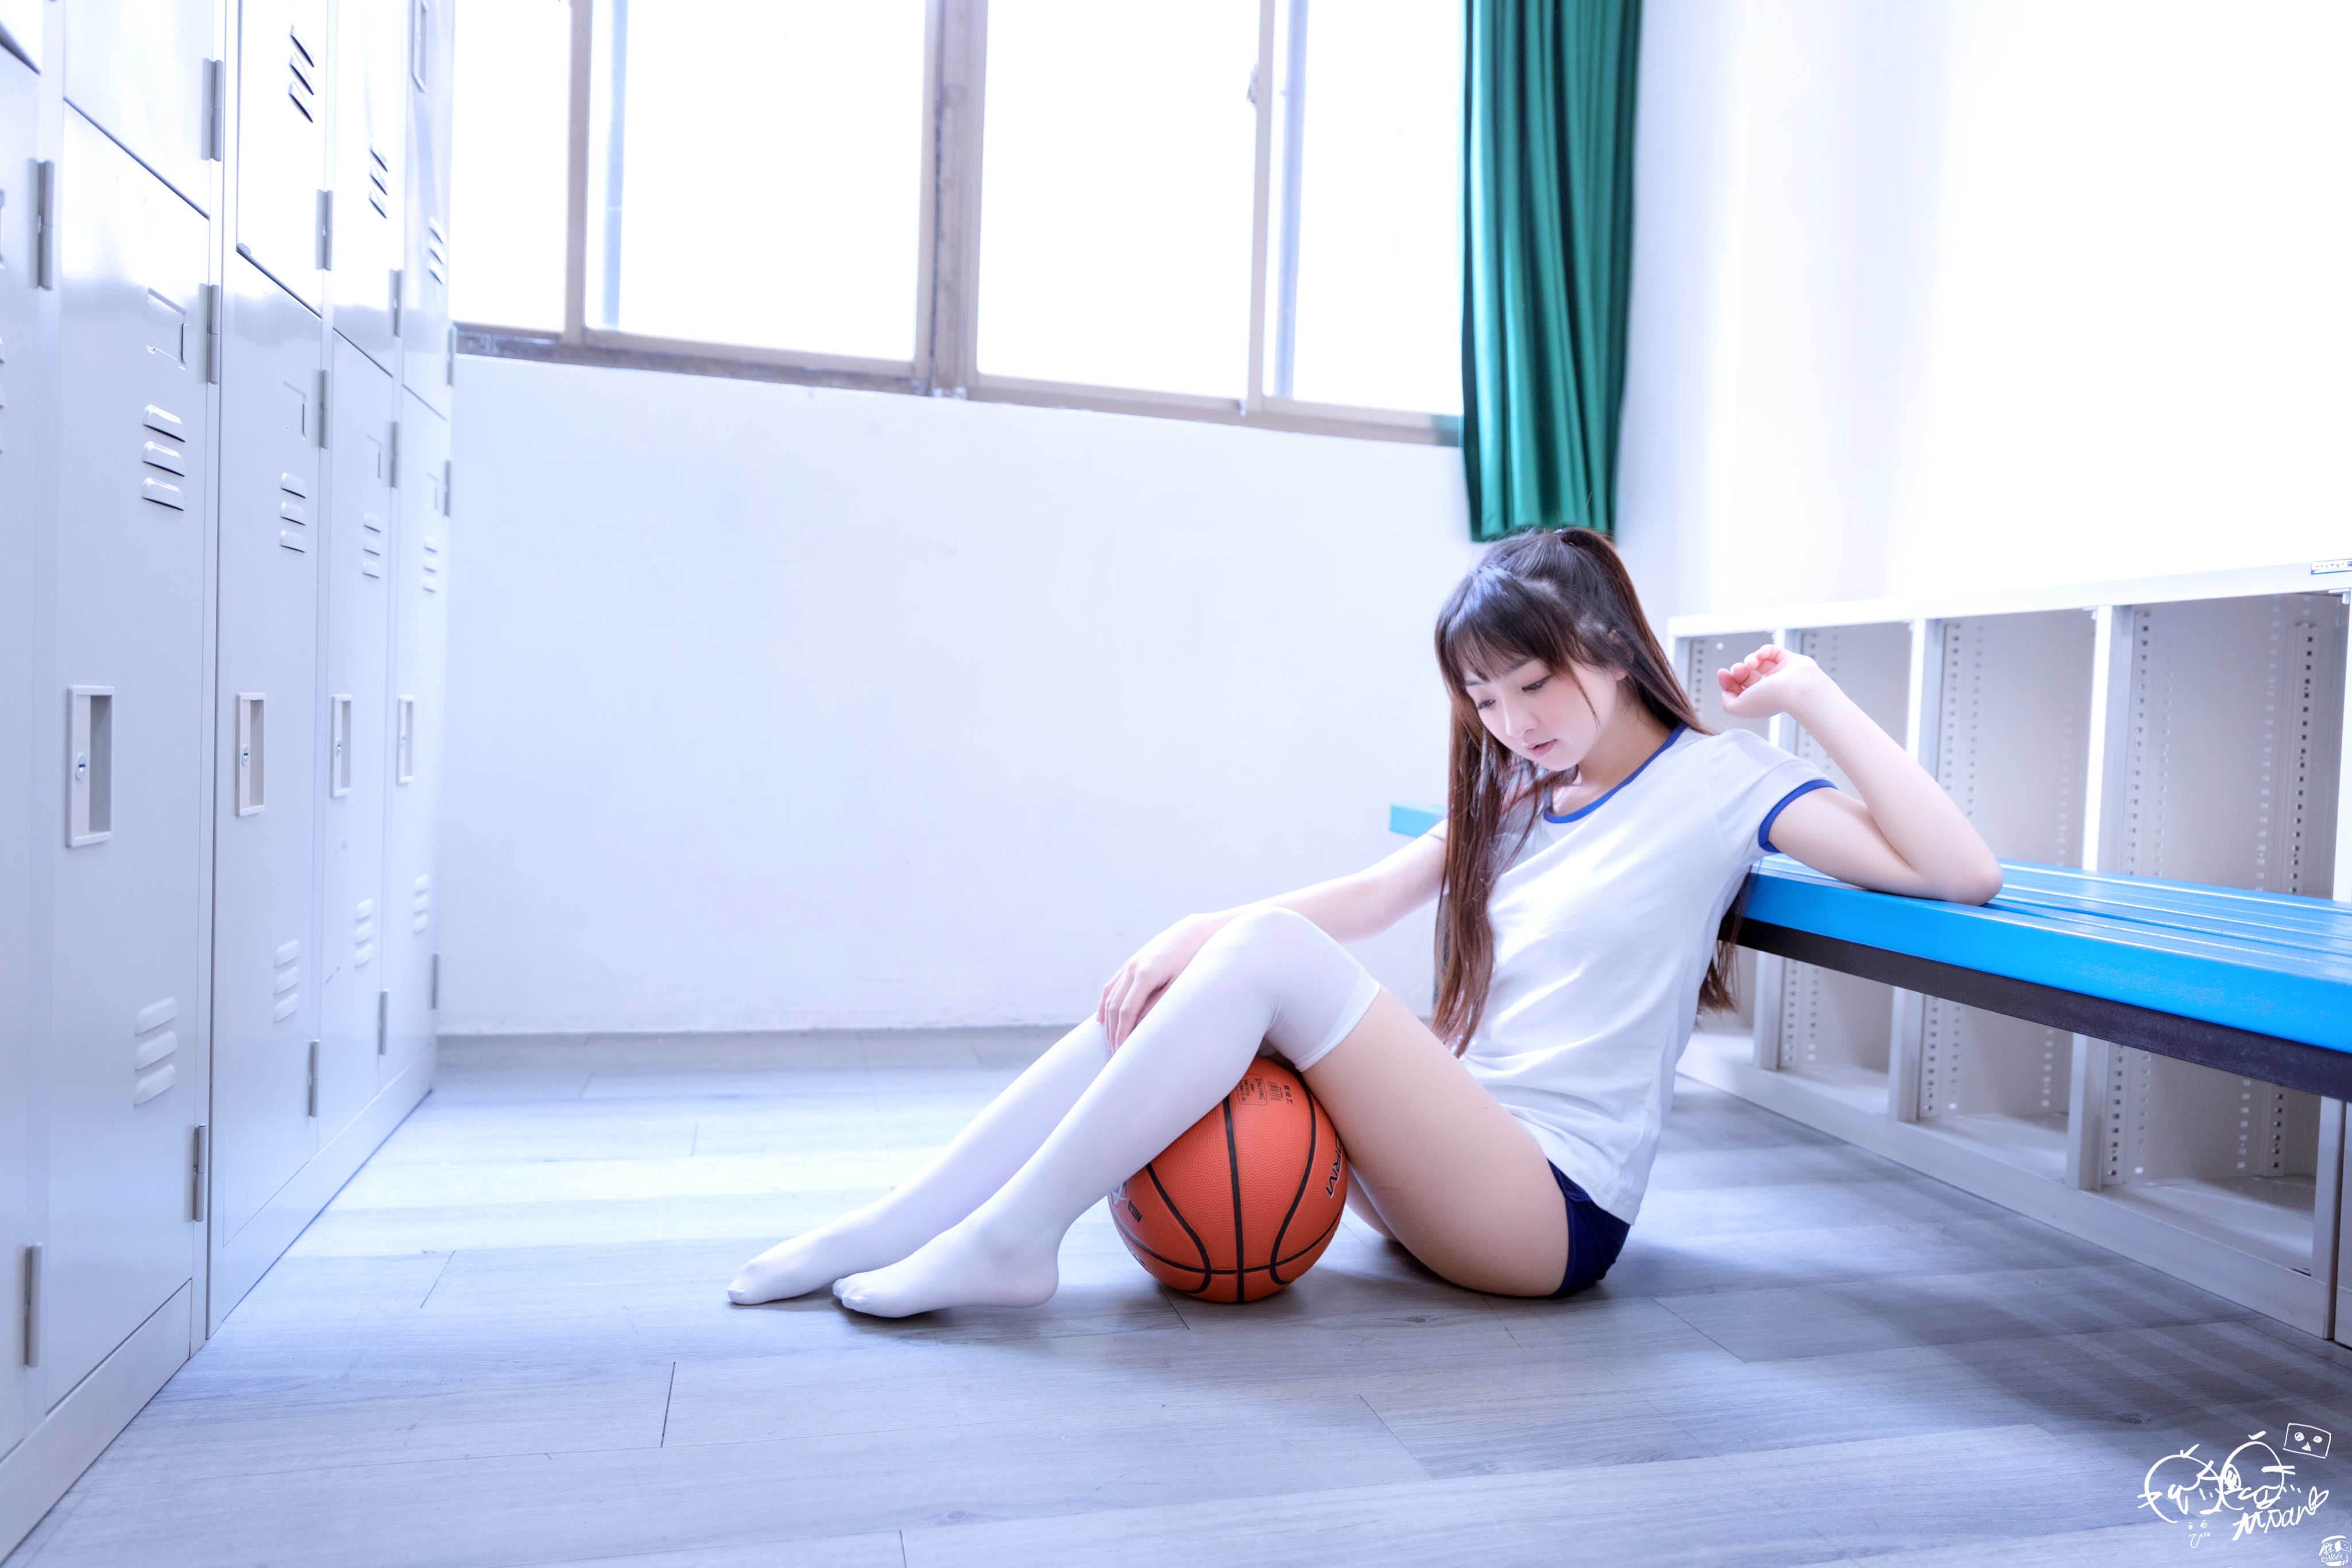 Asian Women Model Long Hair Brunette School School Uniform Basketball Bench Locker Room Lockers T Sh 4096x2731